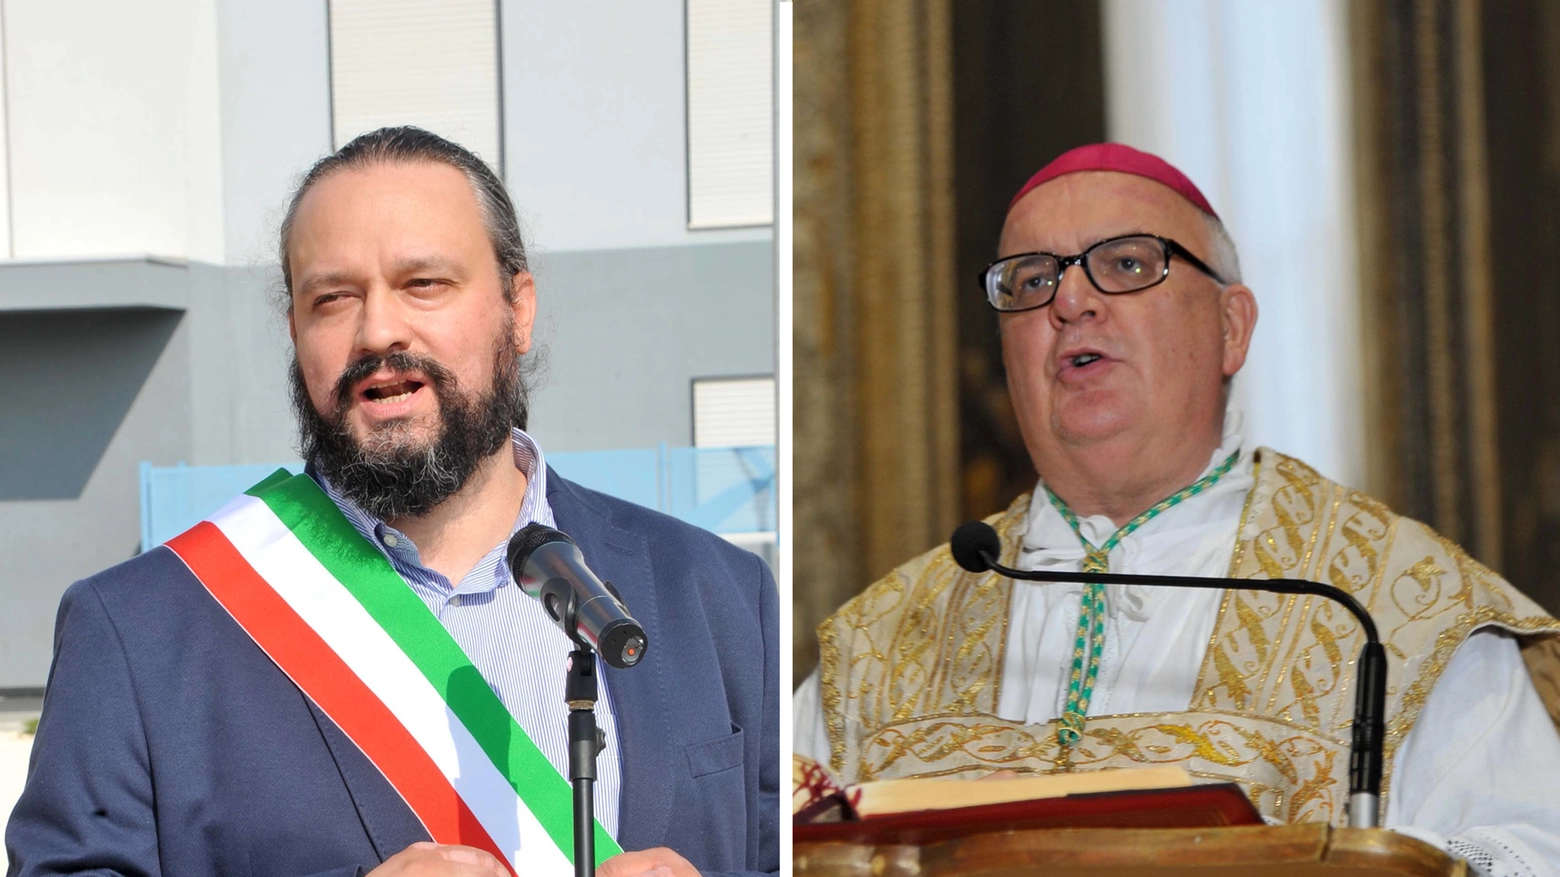 Alan Fabbri e Gian Carlo Perego, sindaco e arcivescovo di Ferrara